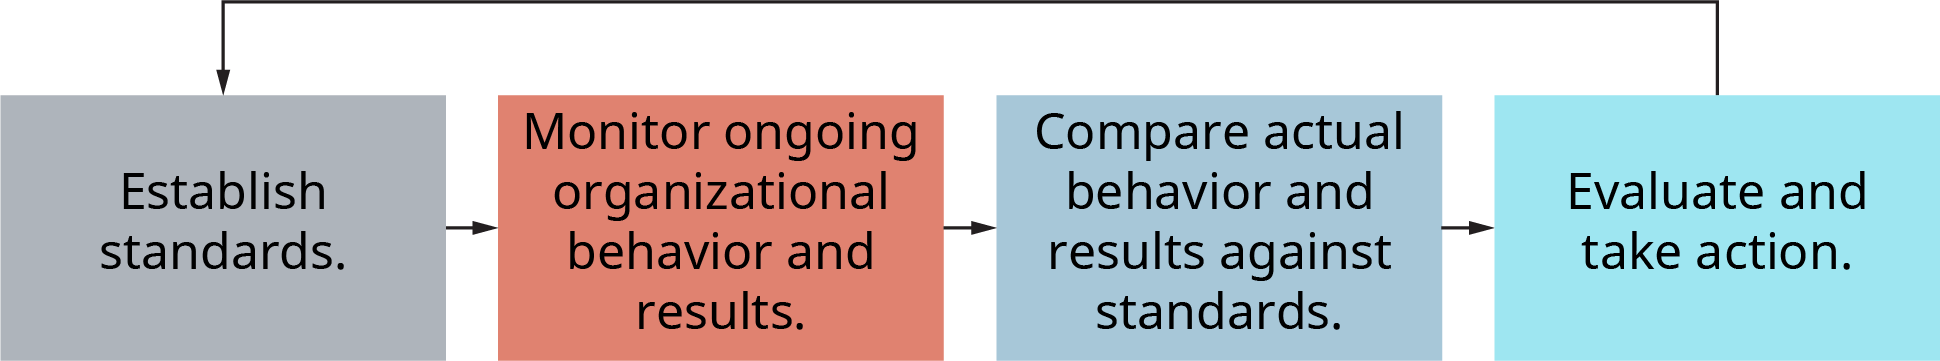 下图说明了四步传统控制模型。